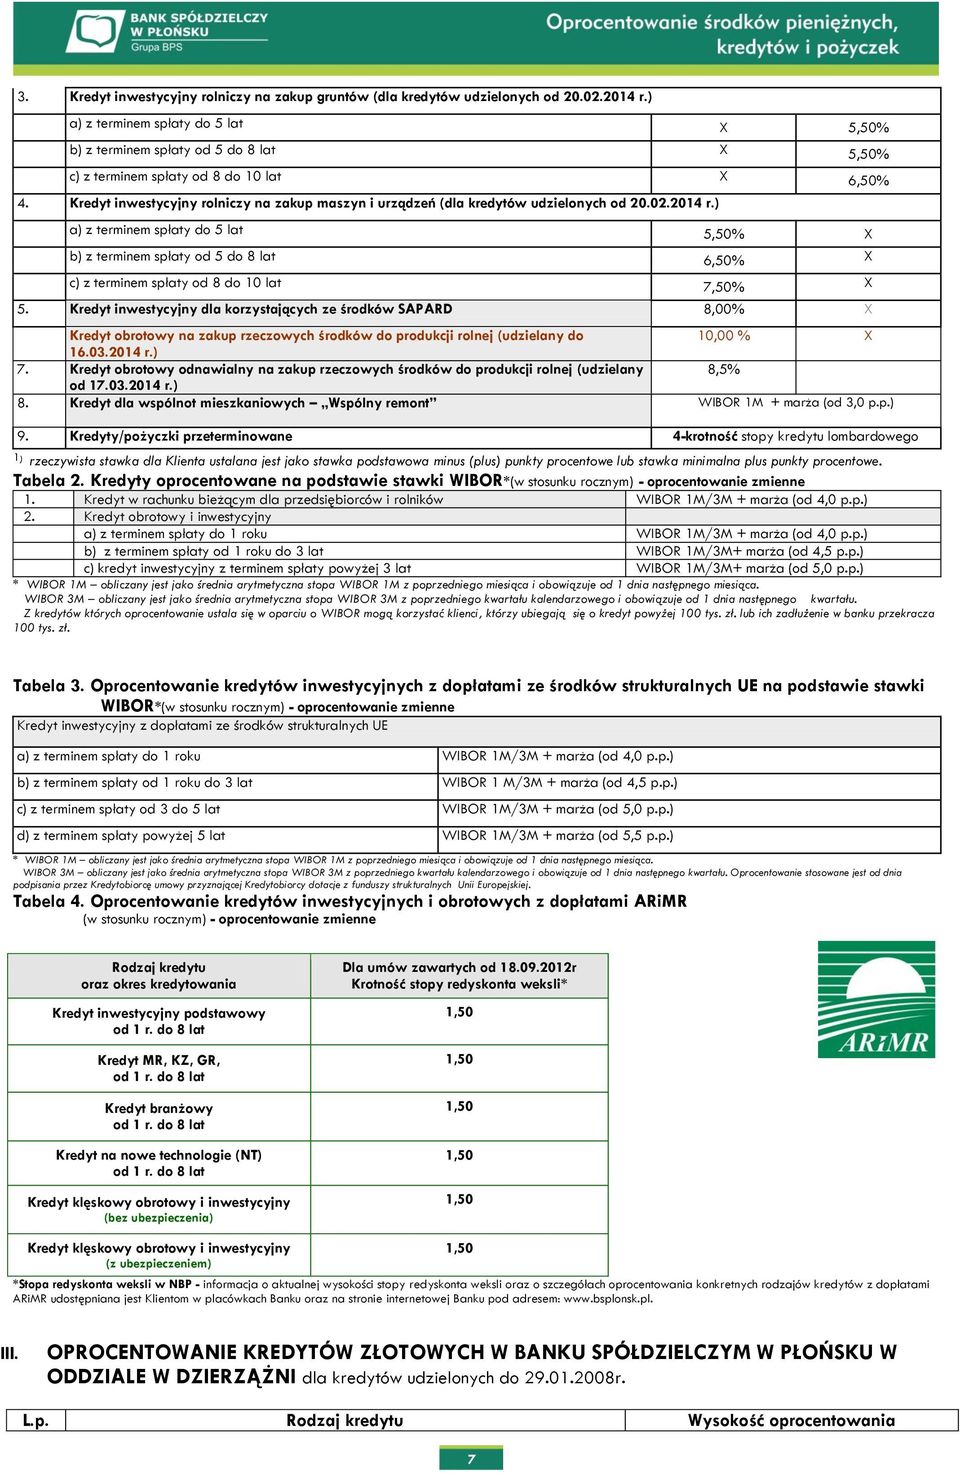 Kredyt inwestycyjny rolniczy na zakup maszyn i urządzeń (dla kredytów udzielonych od 20.02.2014 r.